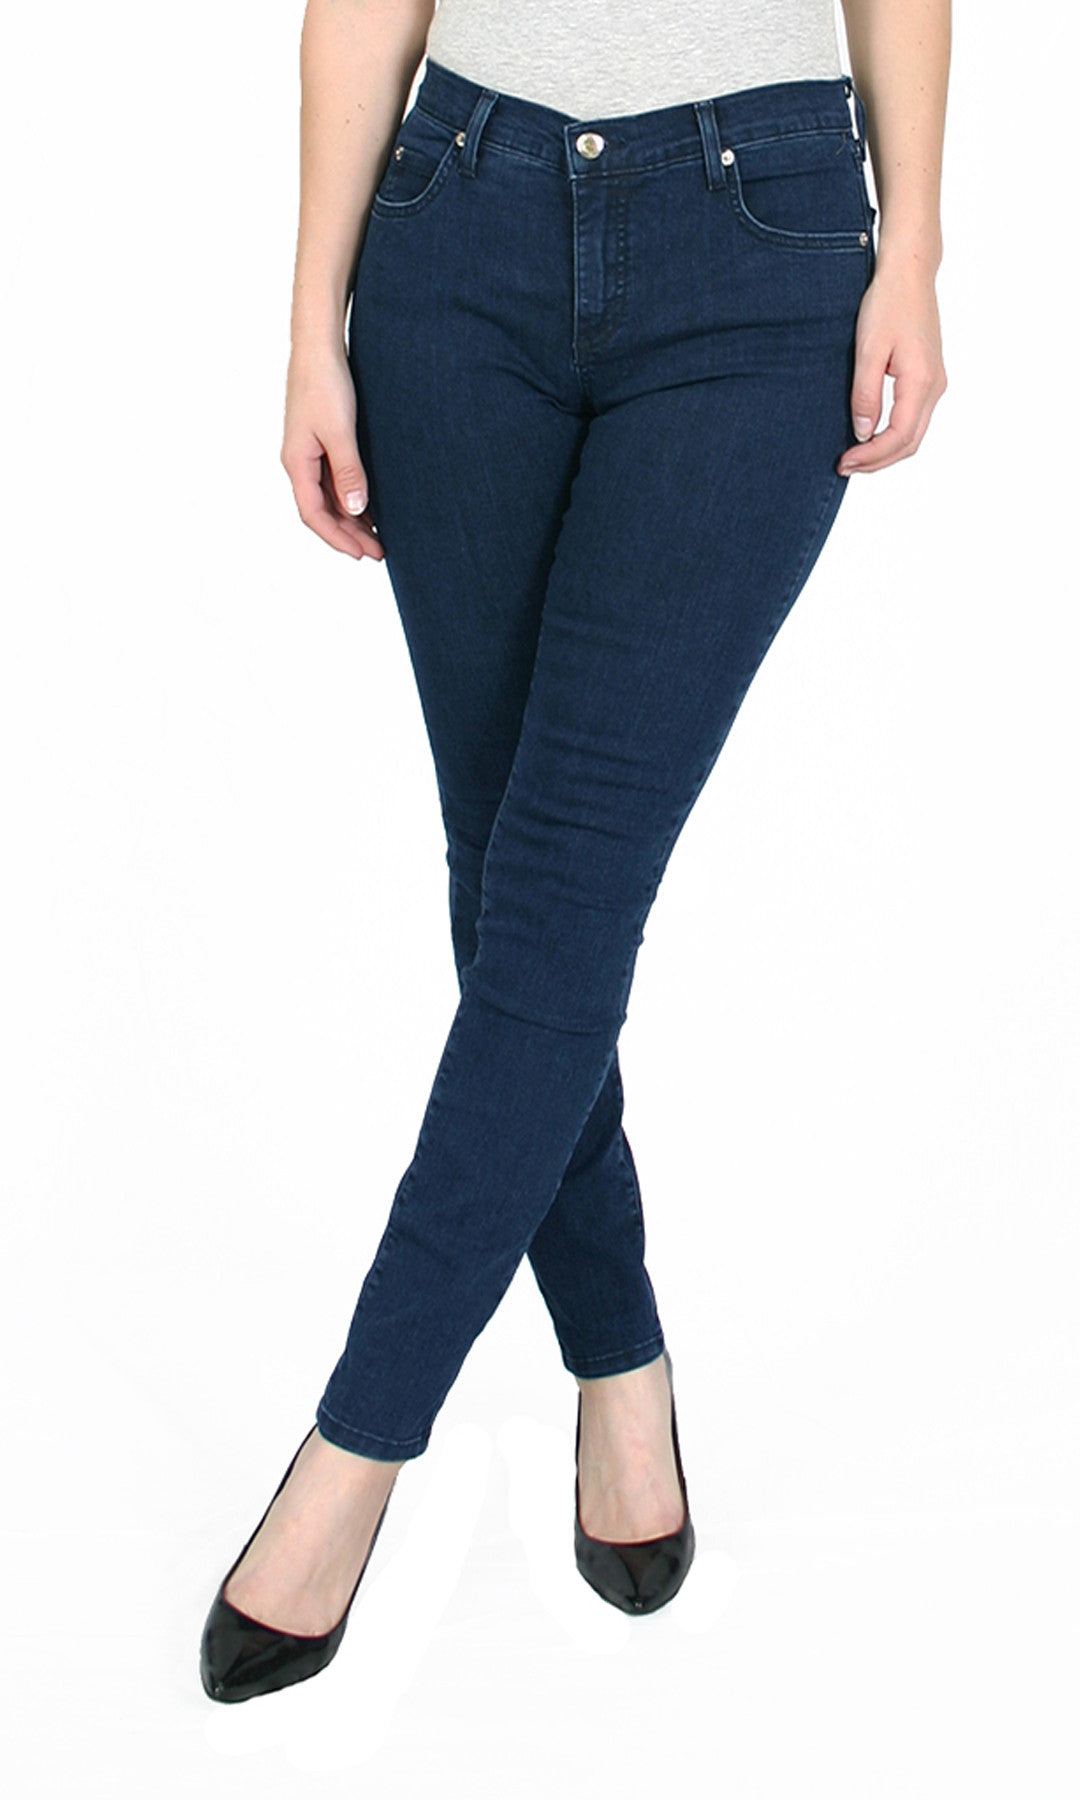 TrueSlim® Premium Women's Leggings – tagged Indigo – TrueSlim Jeans